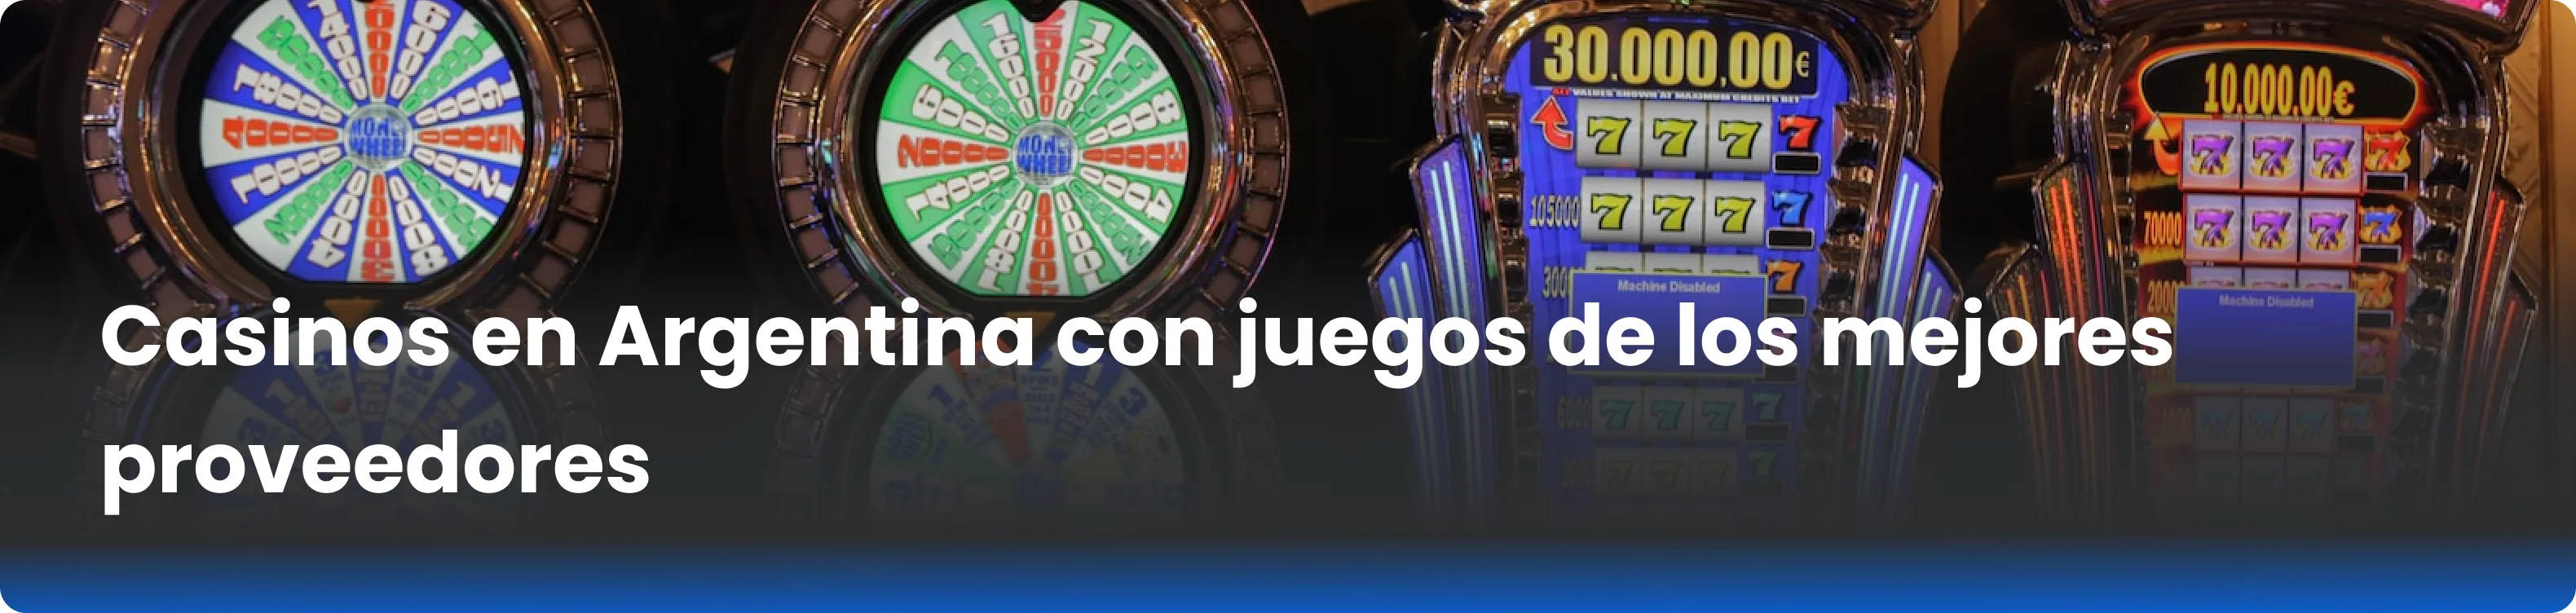 Casinos en Argentina con juegos de los mejores proveedores 